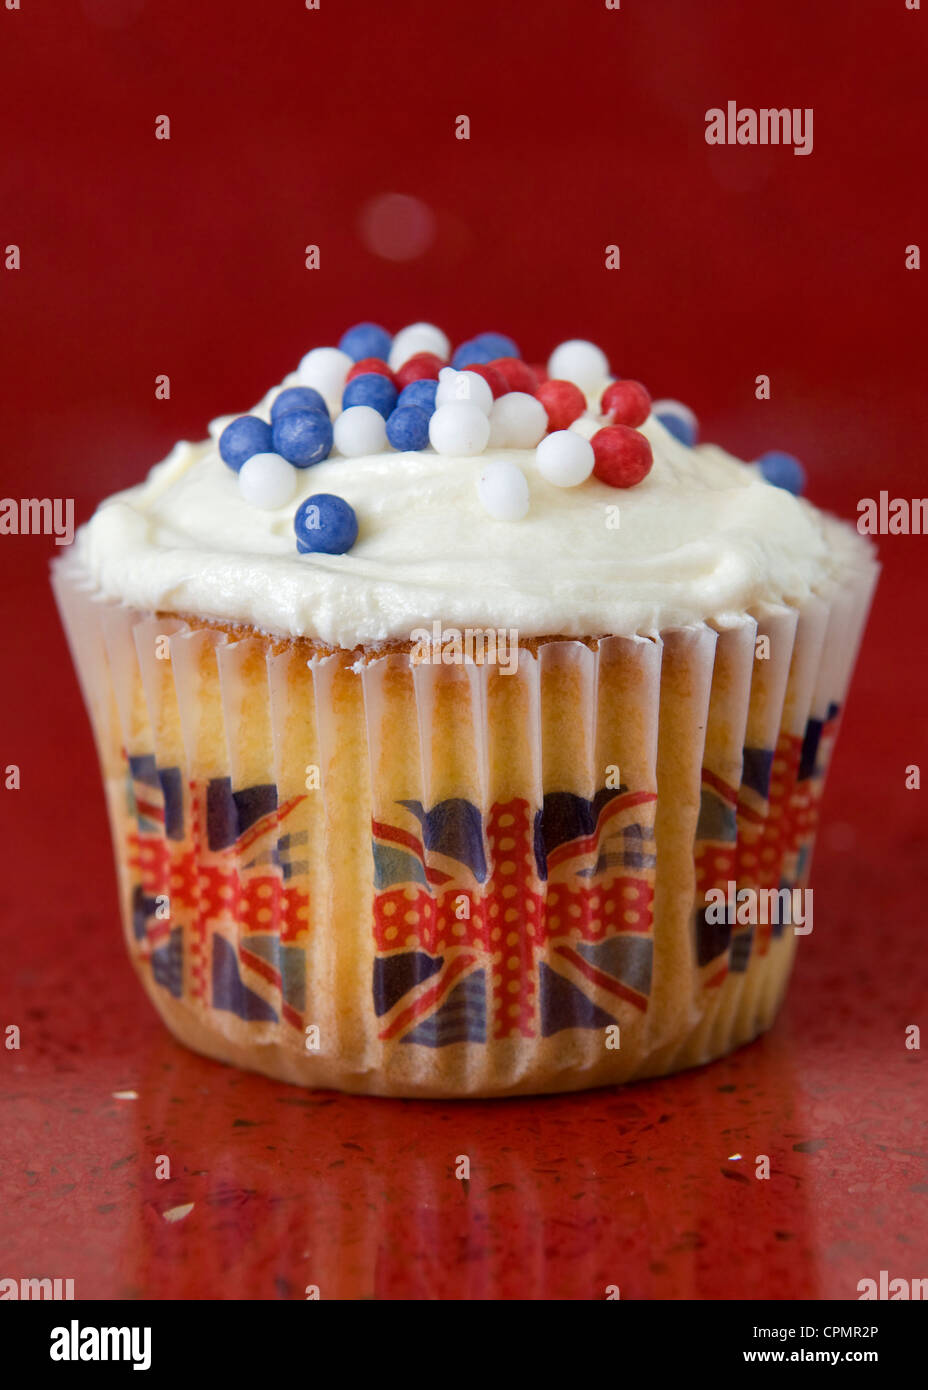 Món bánh cupcake với hình ảnh của cờ Liên hiệp Anh (Union jack) sẽ khiến bạn phải xiêu lòng. Khám phá thiết kế độc đáo này ngay bây giờ.